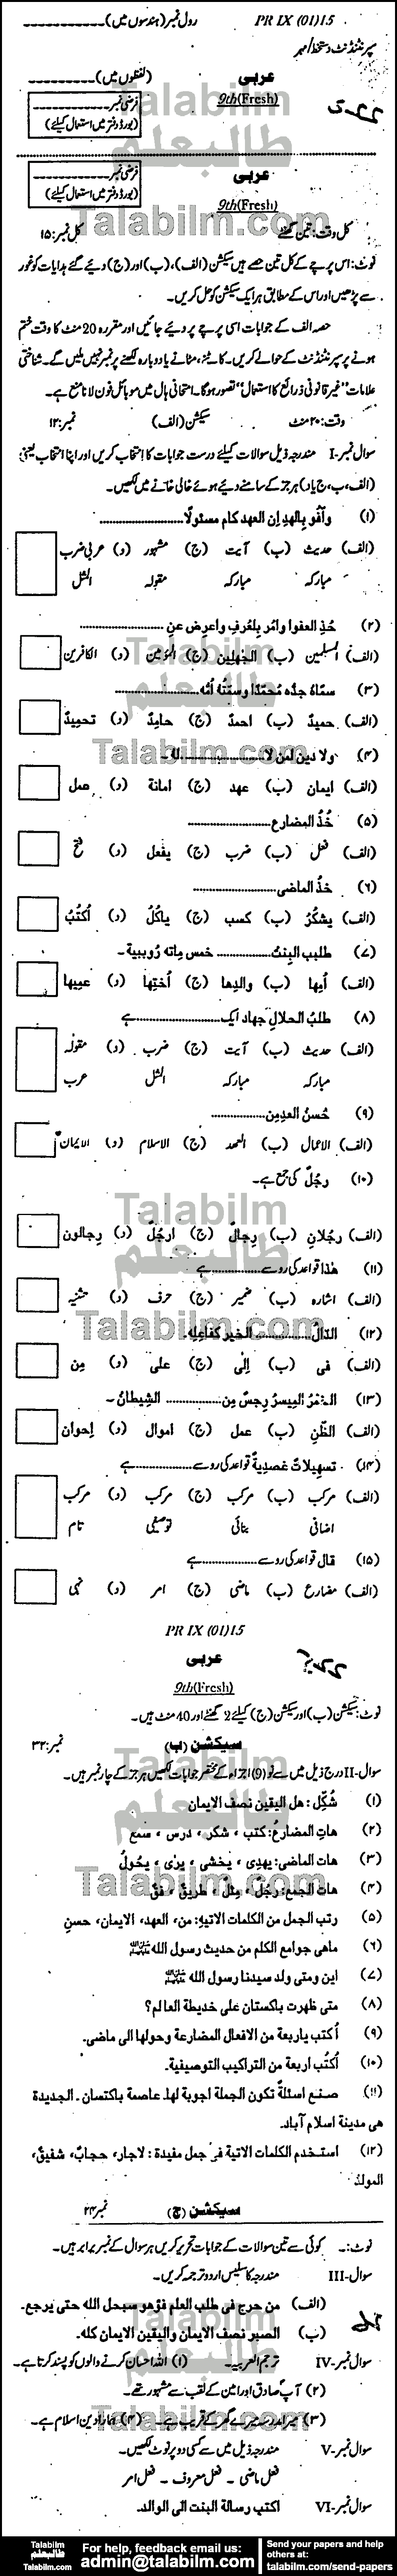 Arabic 0 past paper for Urdu Medium 2015 Group-I